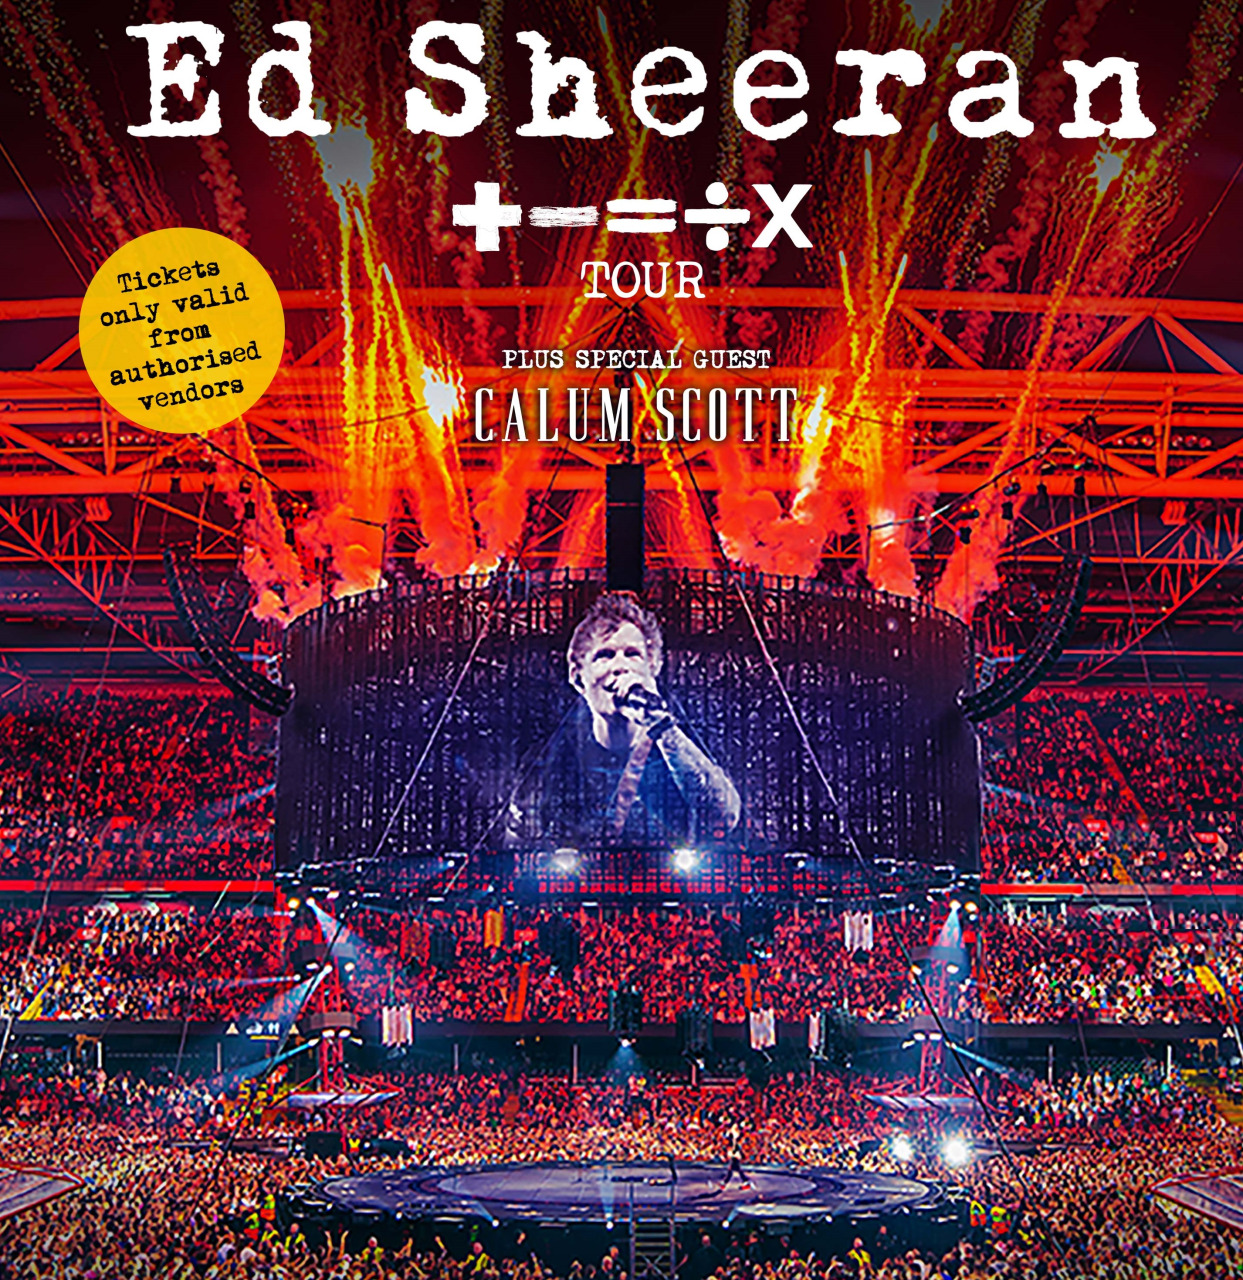 艾德西兰宣布将于明年2月24日带着《Ed Sheeran: + - = ÷ x Tour》大马开唱。